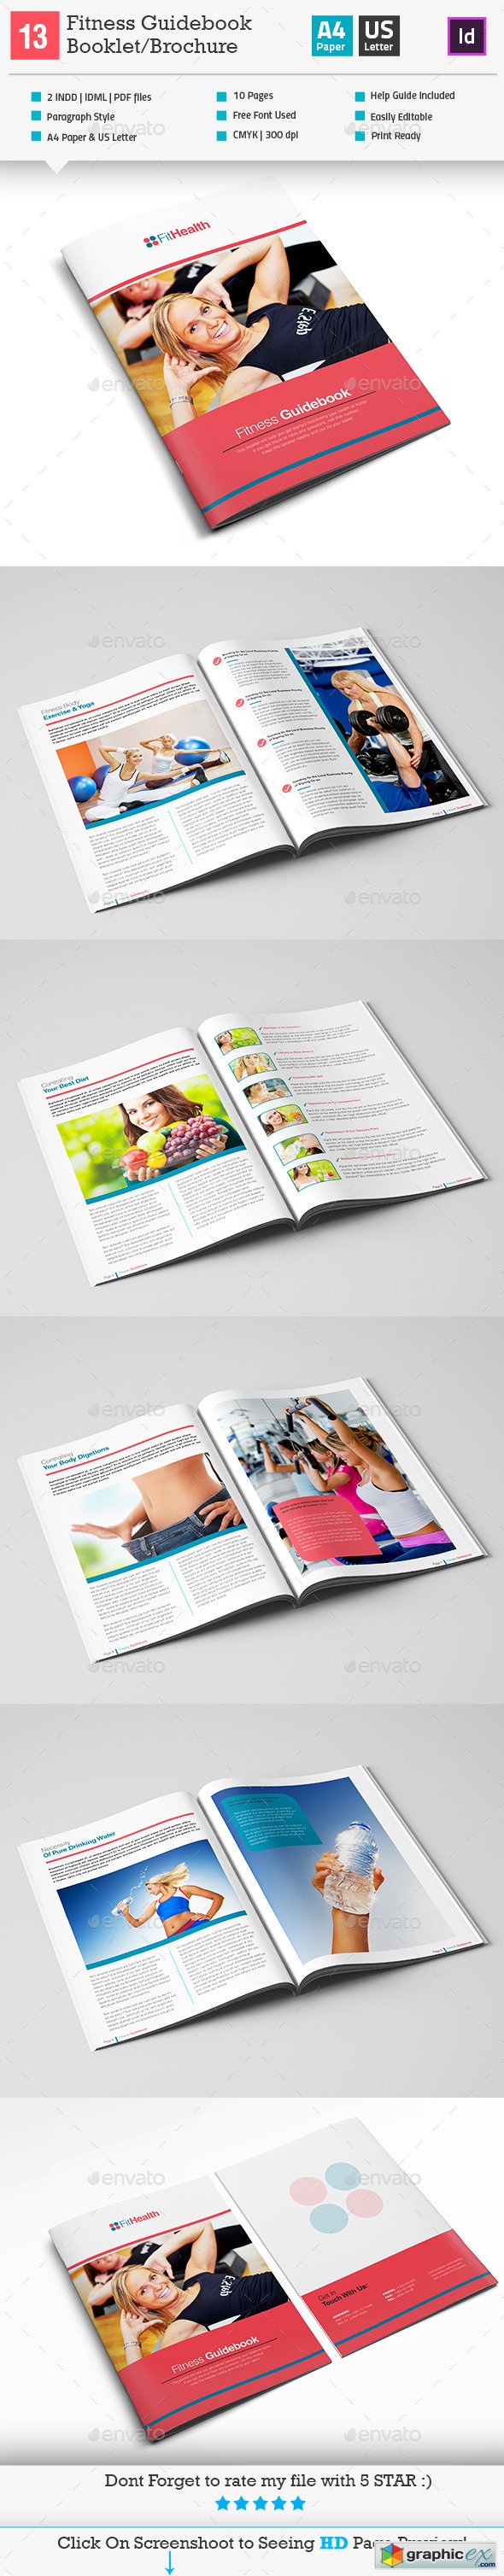 Fitness Guidebook BookletBrochure Indesign V13